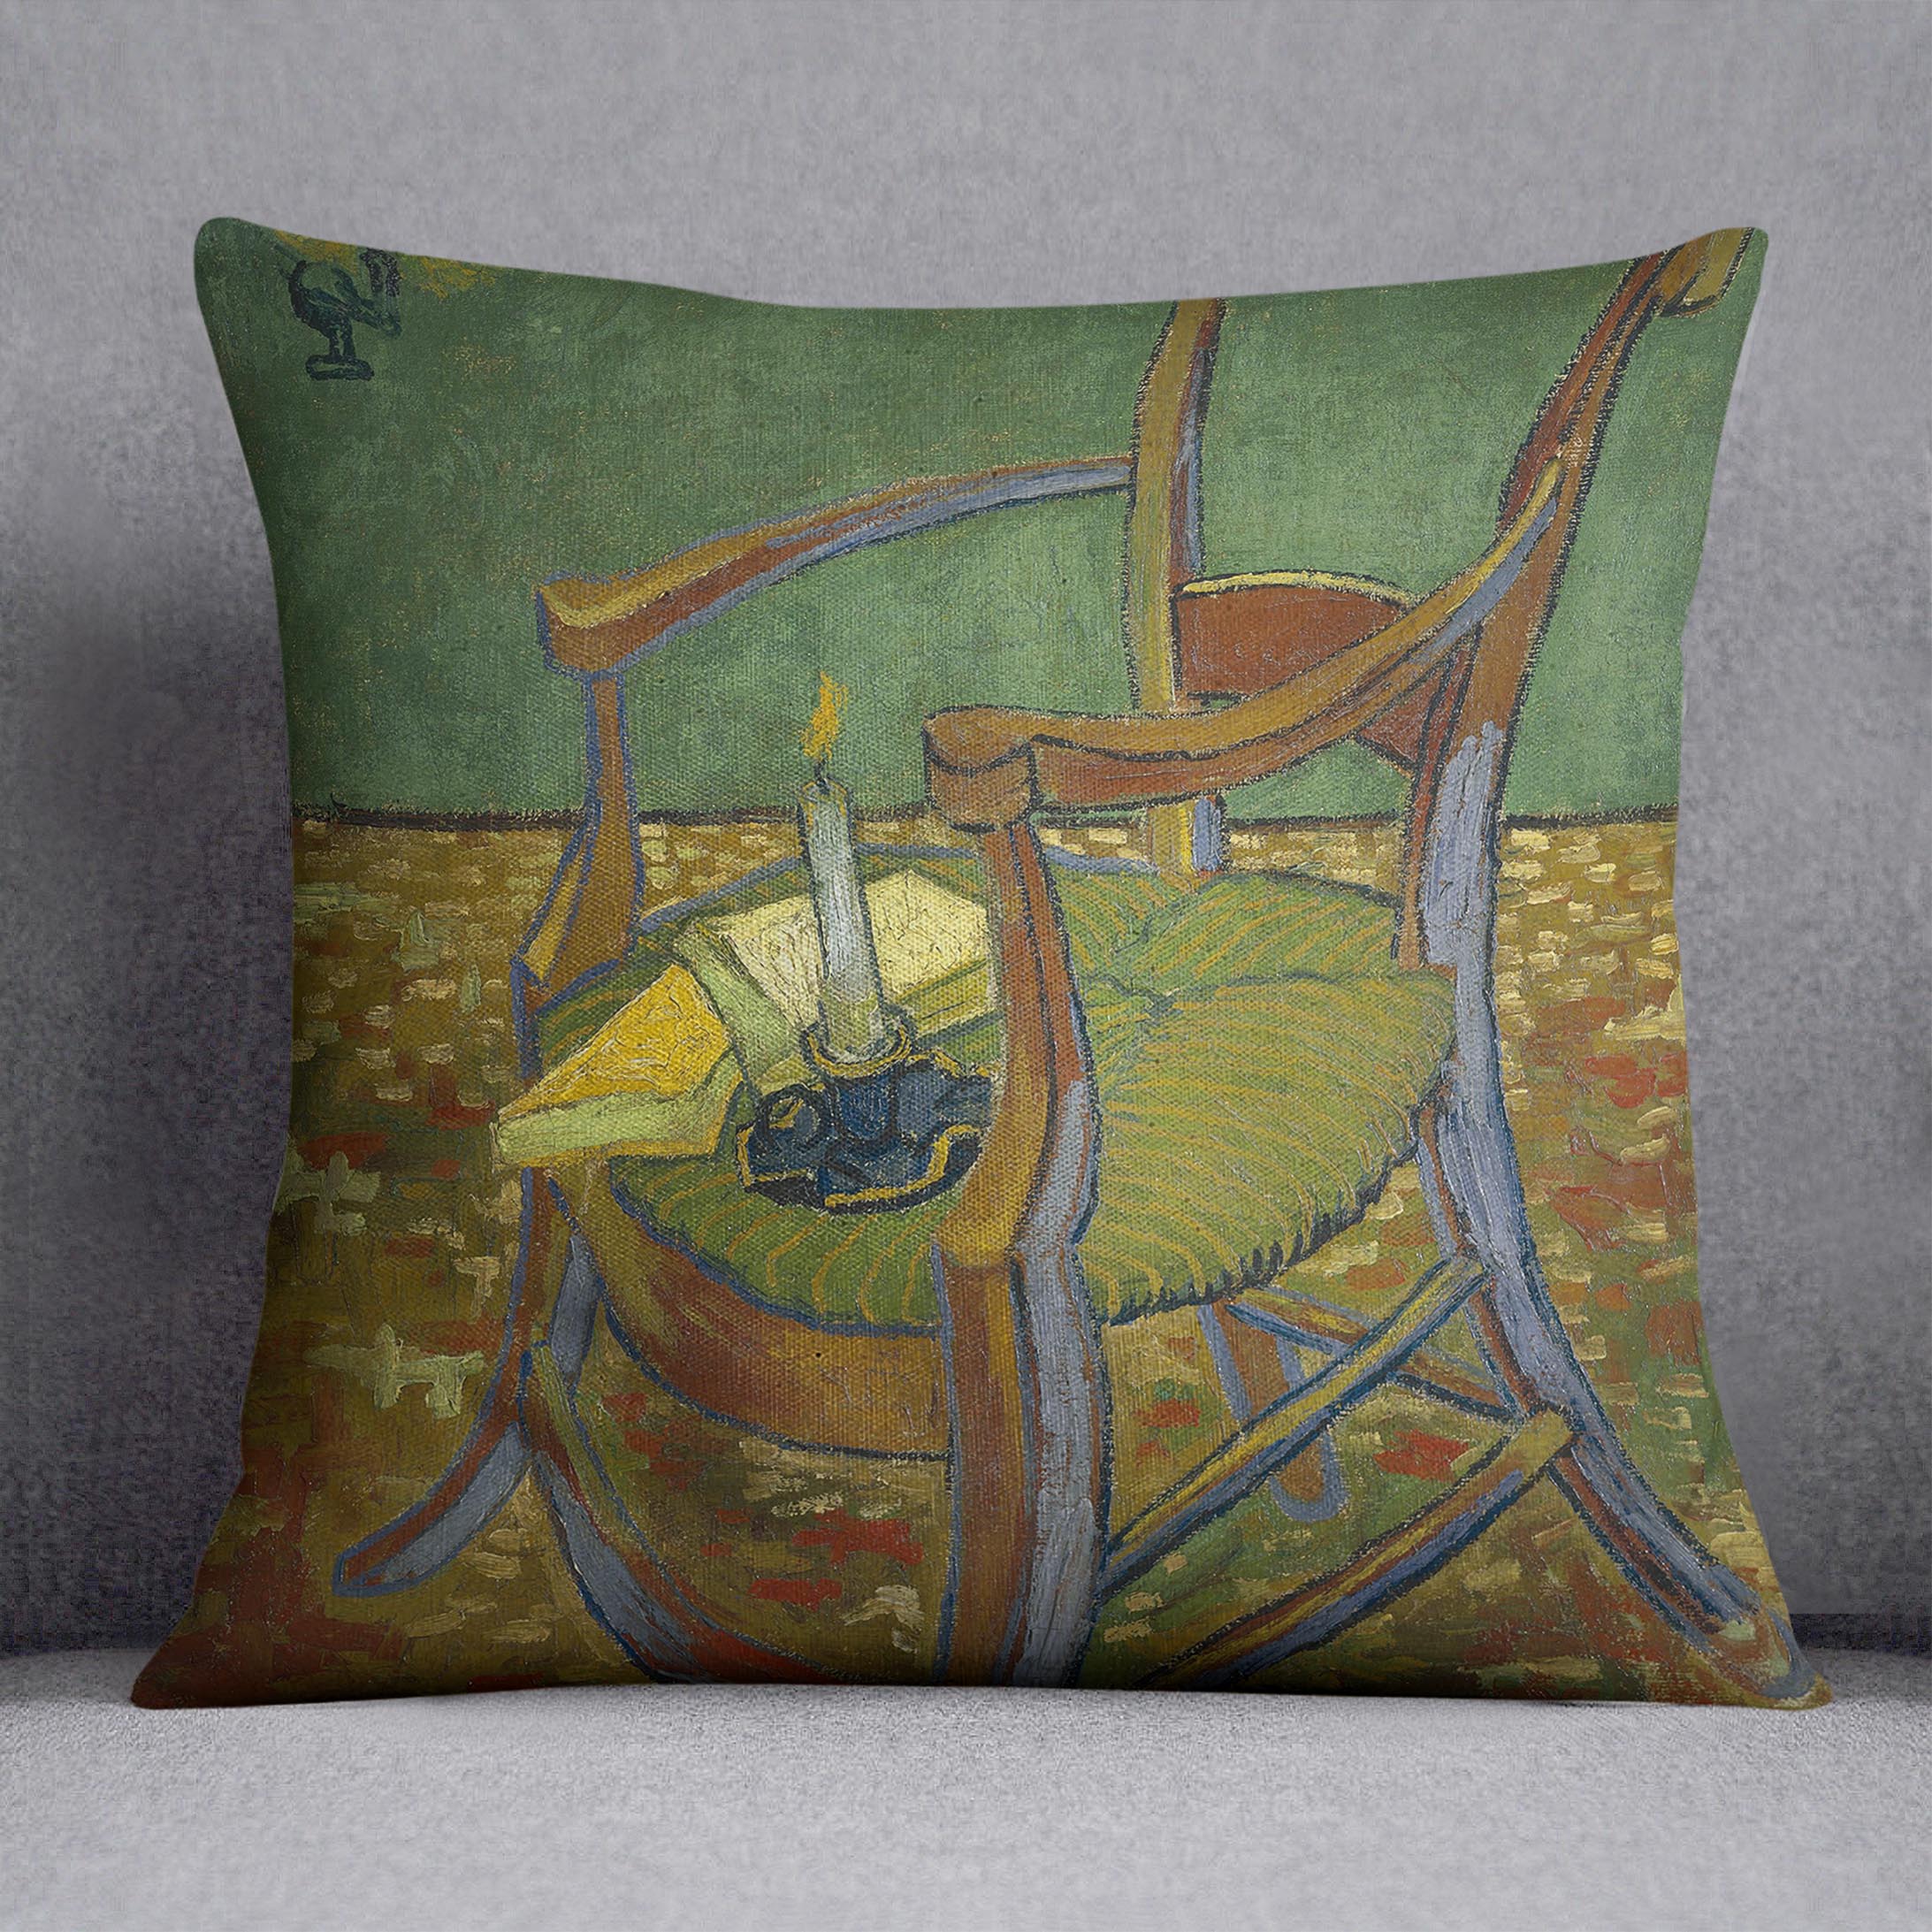 Gauguins chair by Van Gogh Cushion